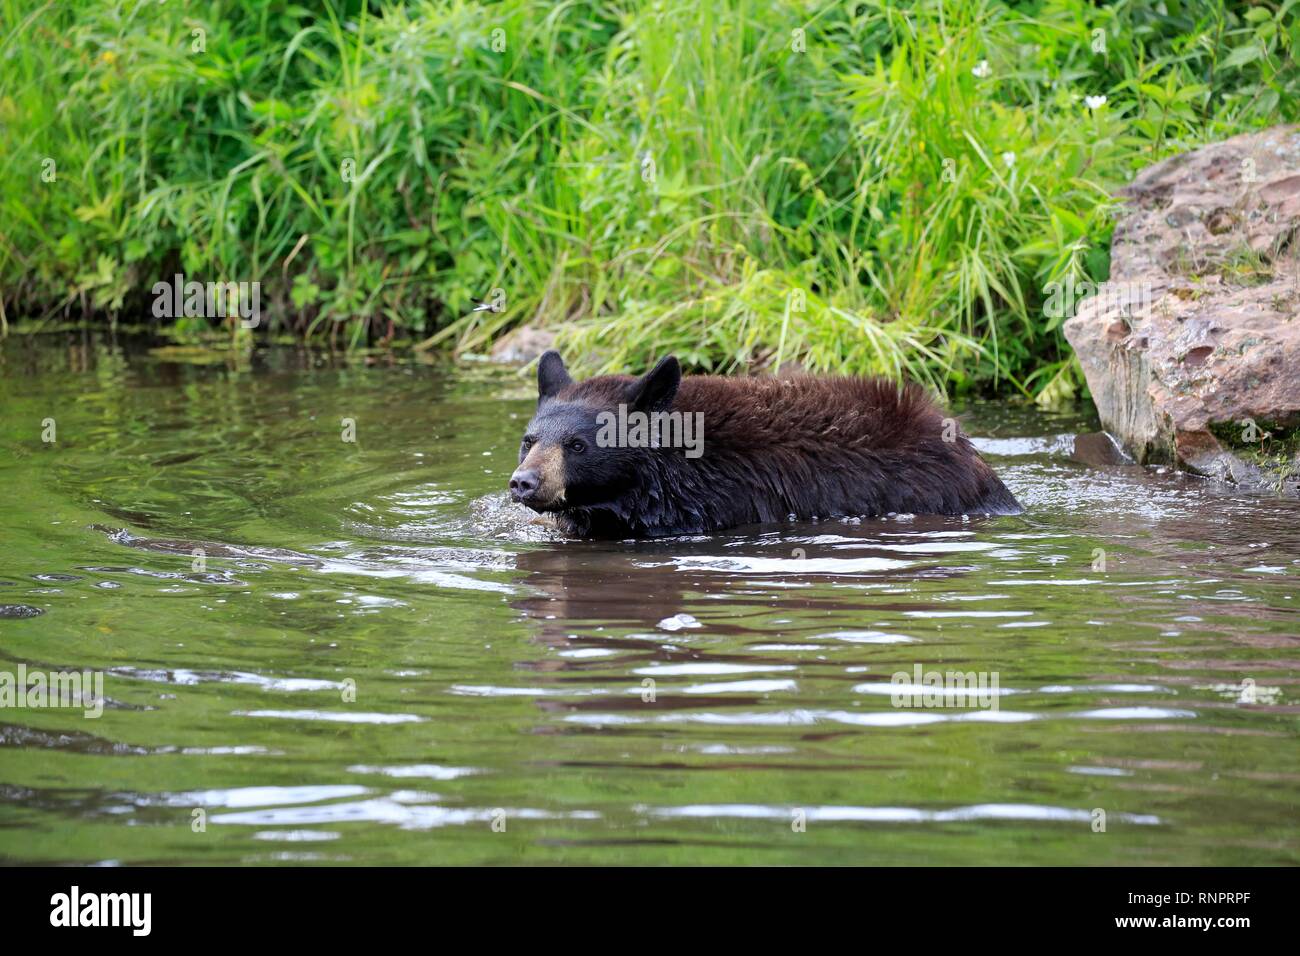 American Black Bear (Ursus americanus), giovane animale in acqua, pino County, Minnesota, Stati Uniti d'America Foto Stock